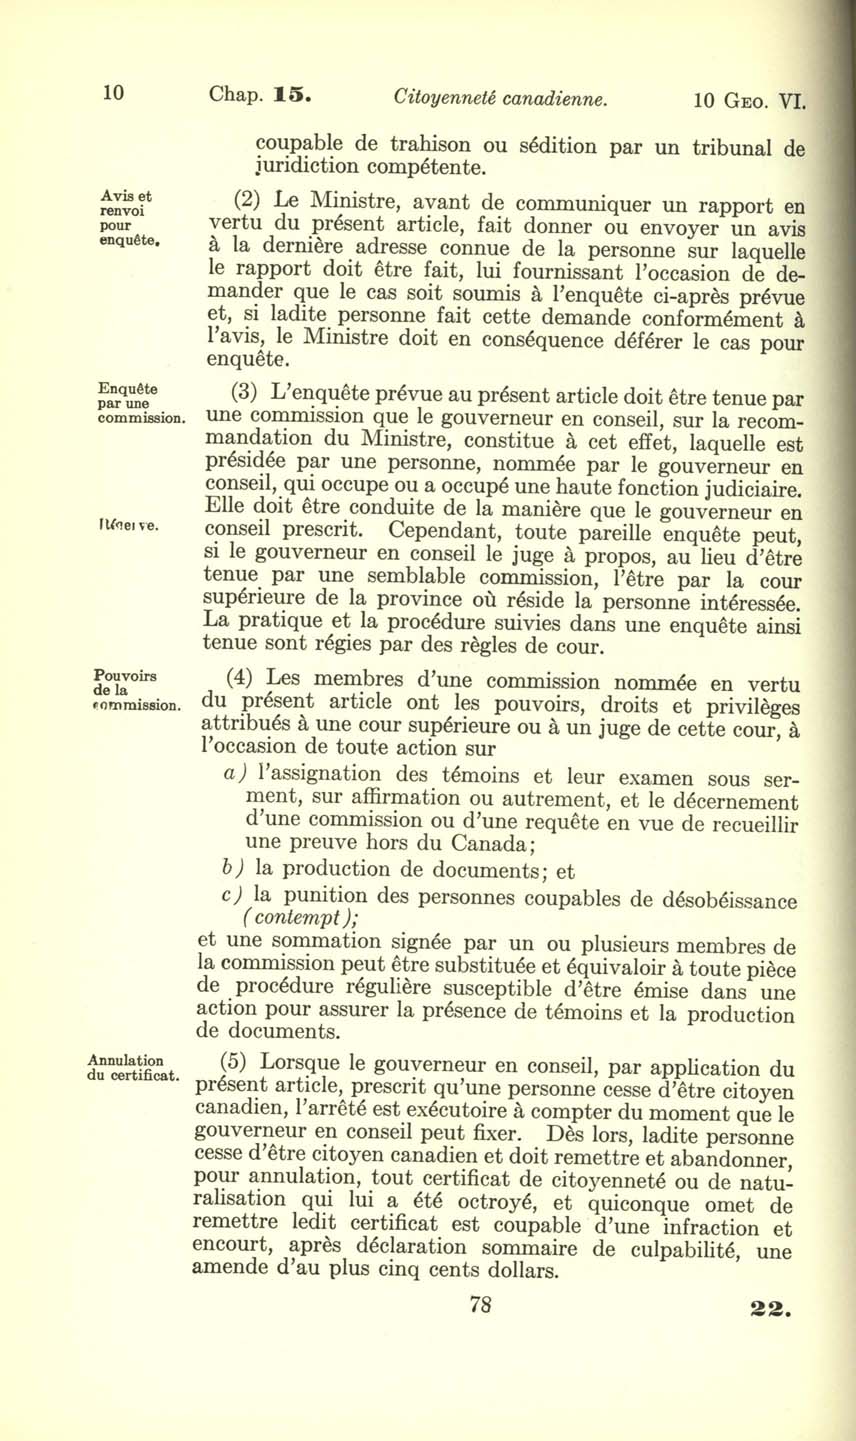 Chap. 15 Page 78 Loi sur la citoyenneté canadienne, 1947